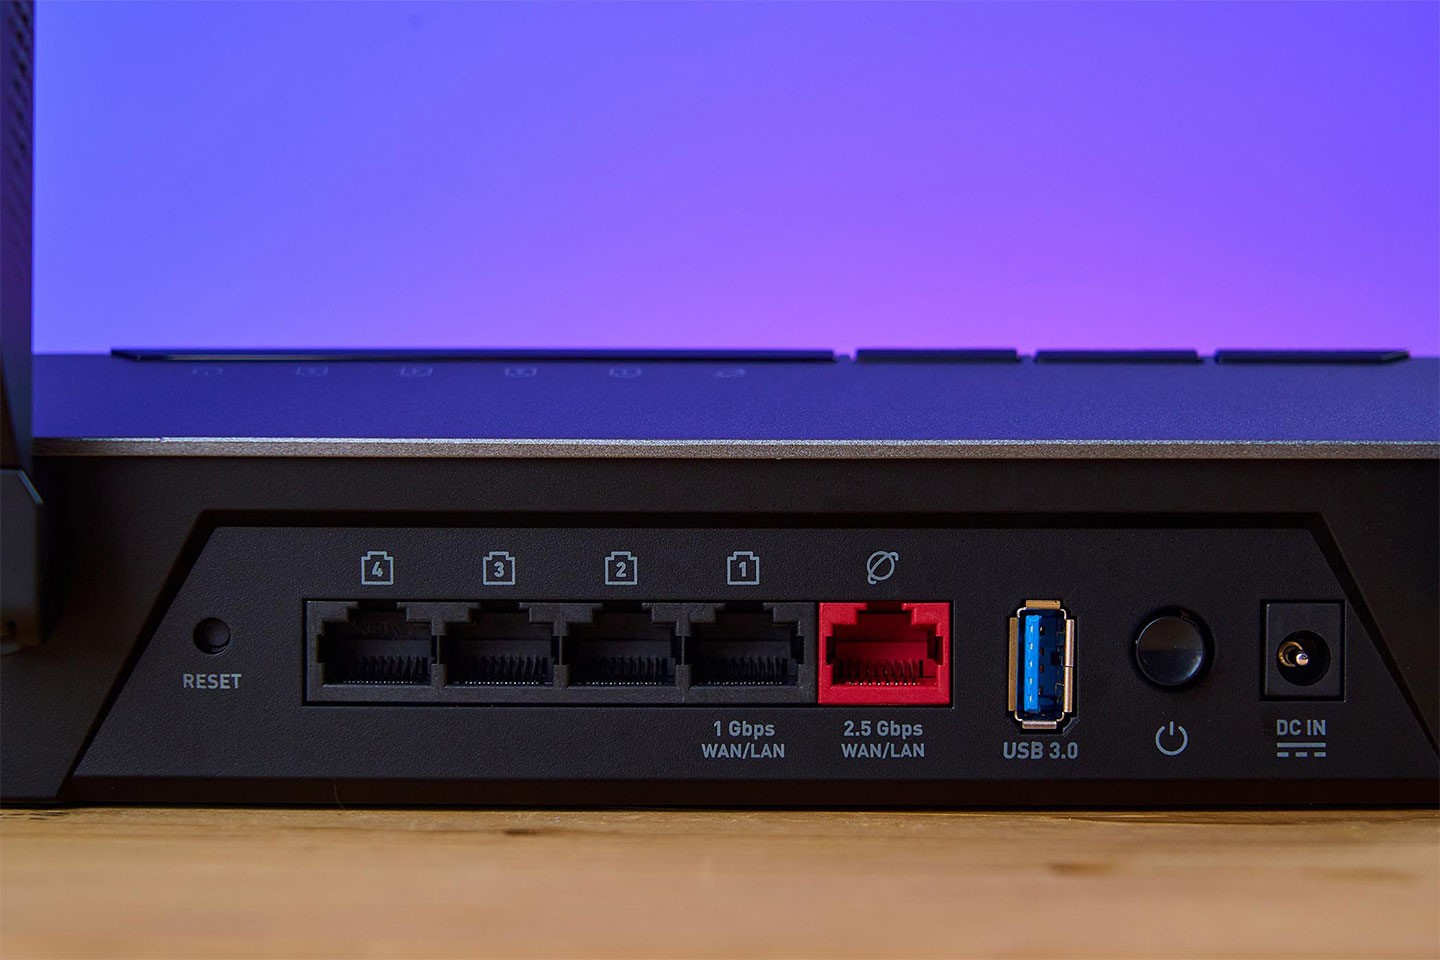 總共有五組 RJ-45 連接埠，包括 4 組 GbE 規格、1 組 2.5 GbE 規格（紅色），其兩組為 WAN / LAN 用，另外也有一組 USB 3.0 Type A 埠可連結儲裝置並置網路共享使用。